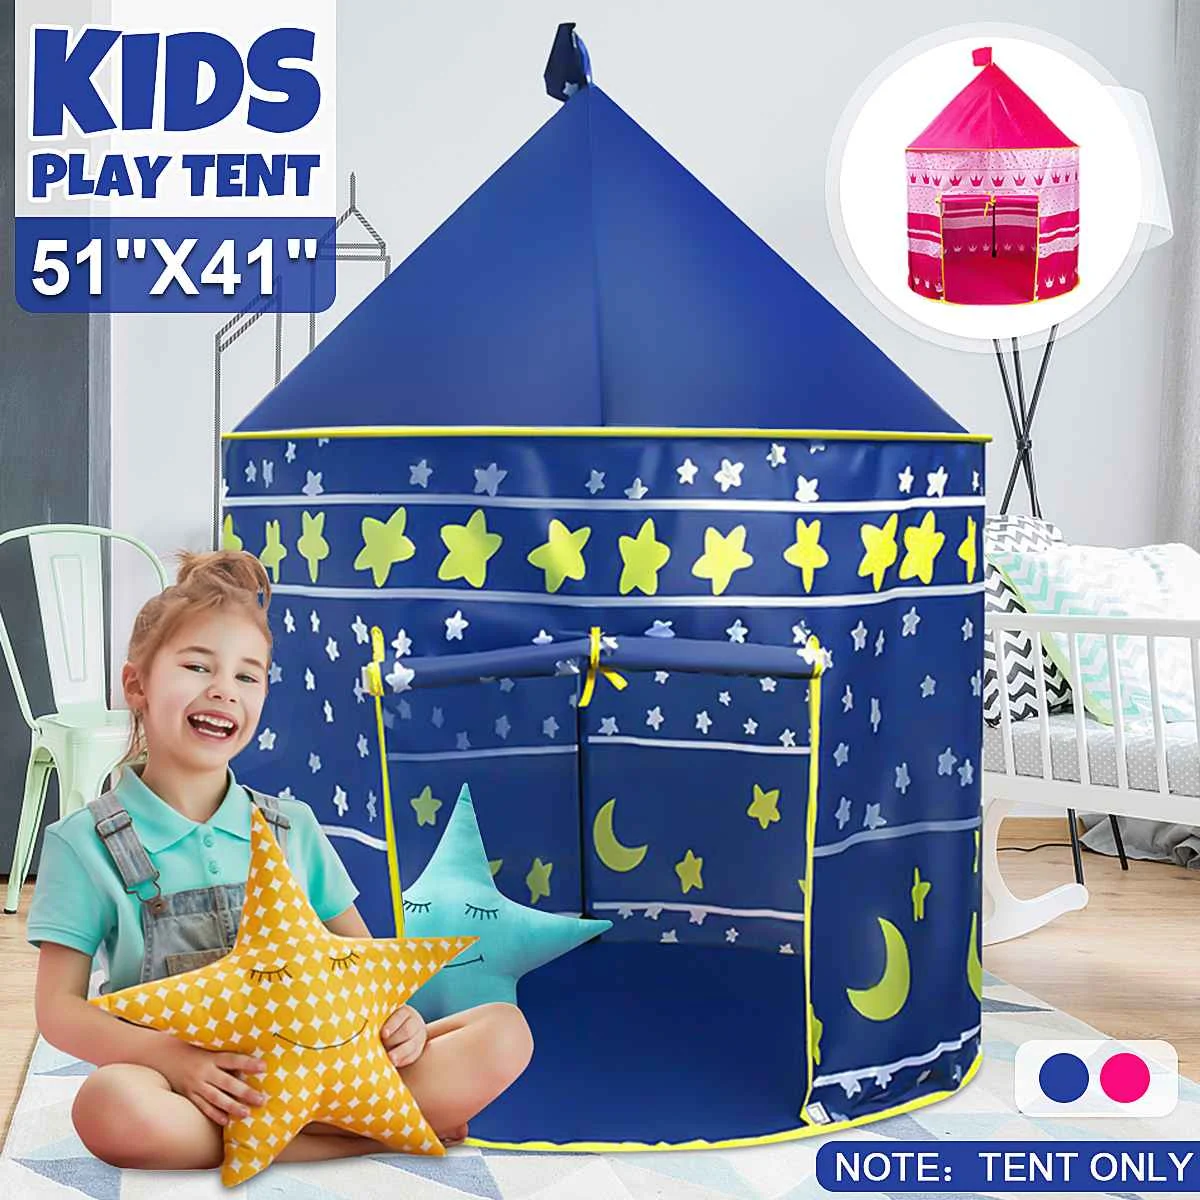 

Игровая палатка Розовая/синяя, портативная складная палатка для мальчиков и девочек, замок для детей, игровой домик, подарок для детей, игру...